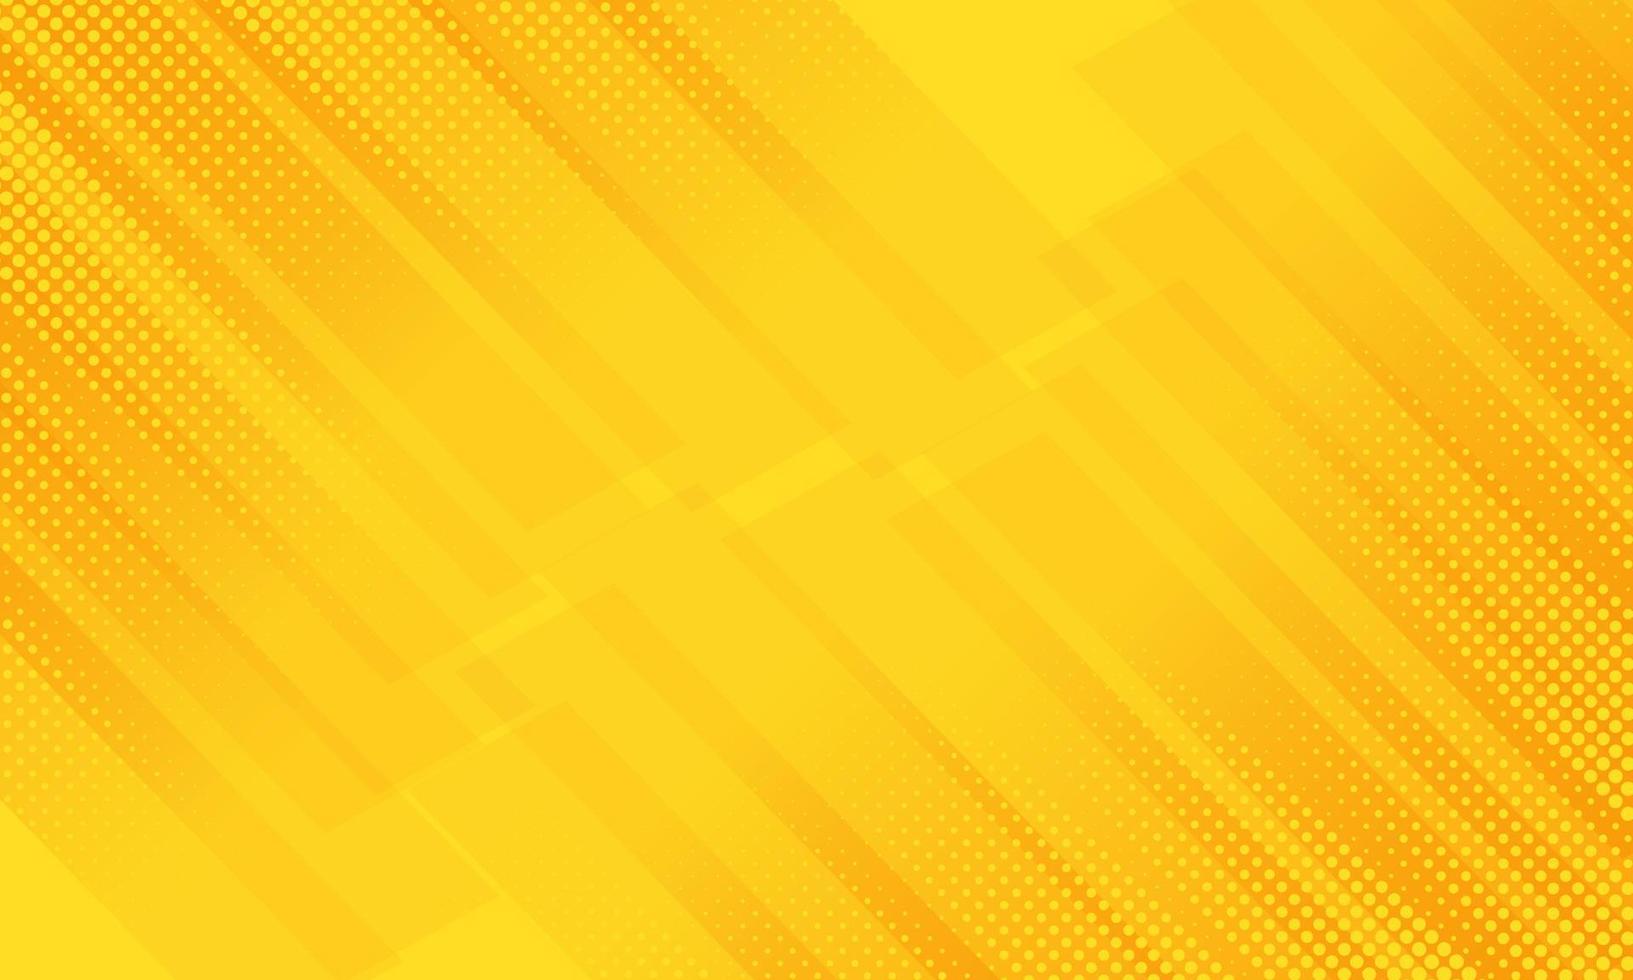 linee diagonali geometriche modello futuristico astratto su sfondo giallo arancione. concetto di tecnologia moderna. è possibile utilizzare per la copertina del modello di brochure, poster, banner web, pubblicità stampata, ecc. illustrazione vettoriale